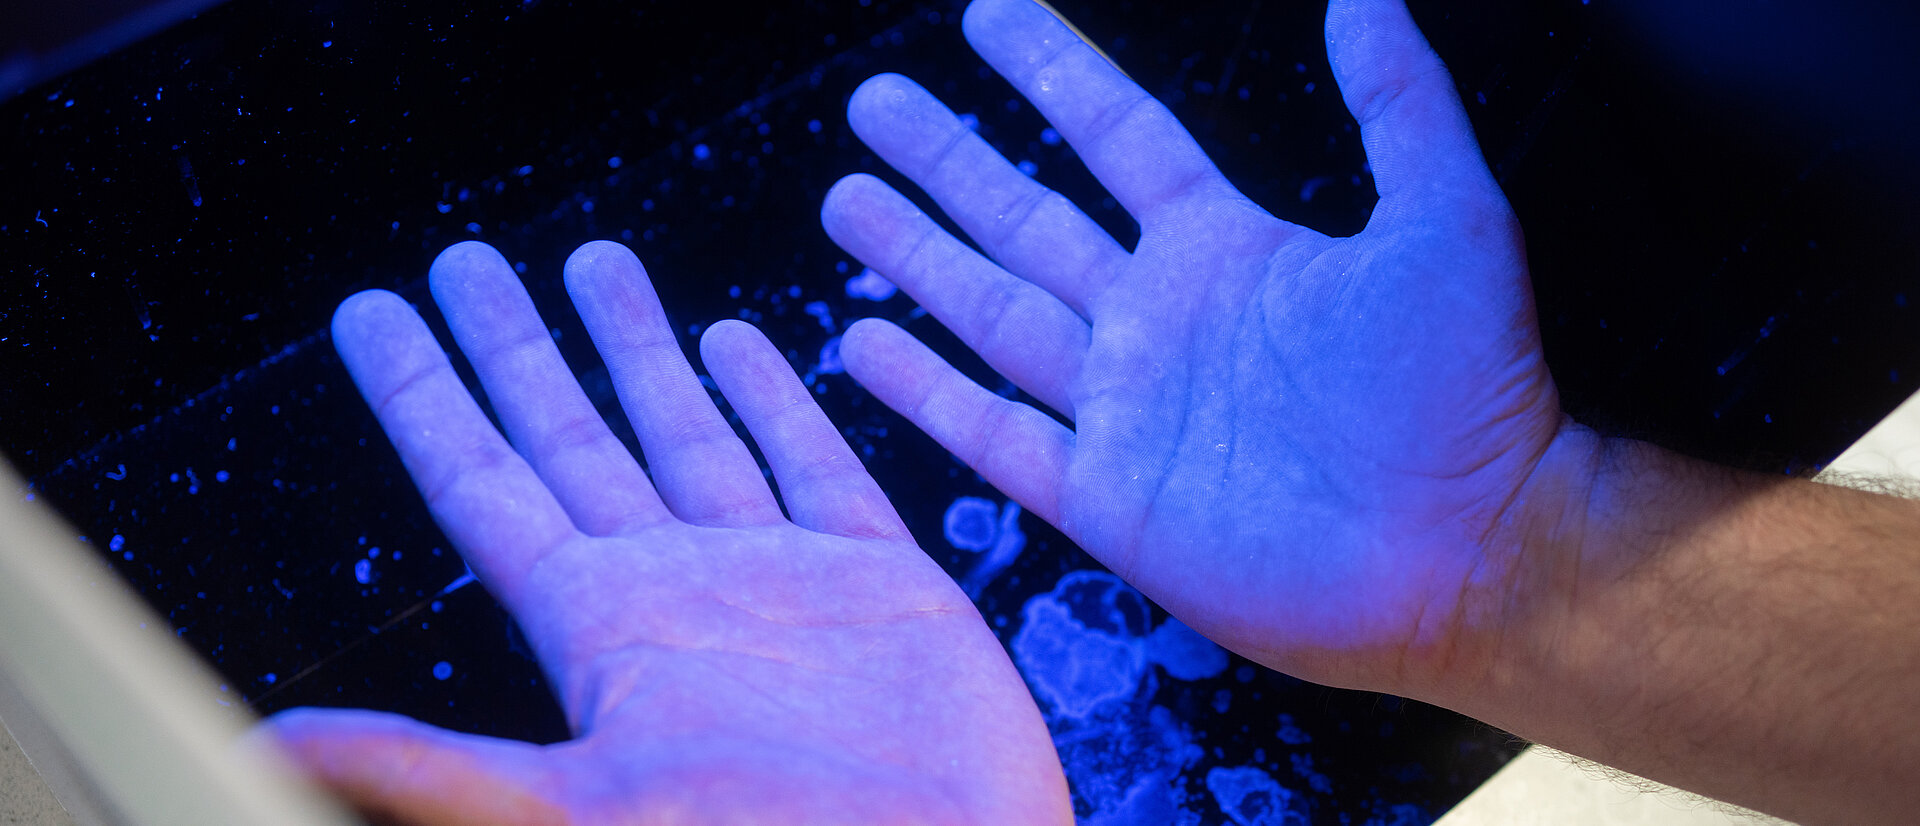 Kontrolle der Händehygiene durch Schwarzlicht, durchgeführt durch die Abteilung der Krankenhaushygiene der Lahn-Dill-Kliniken am Klinikum Wetzlar